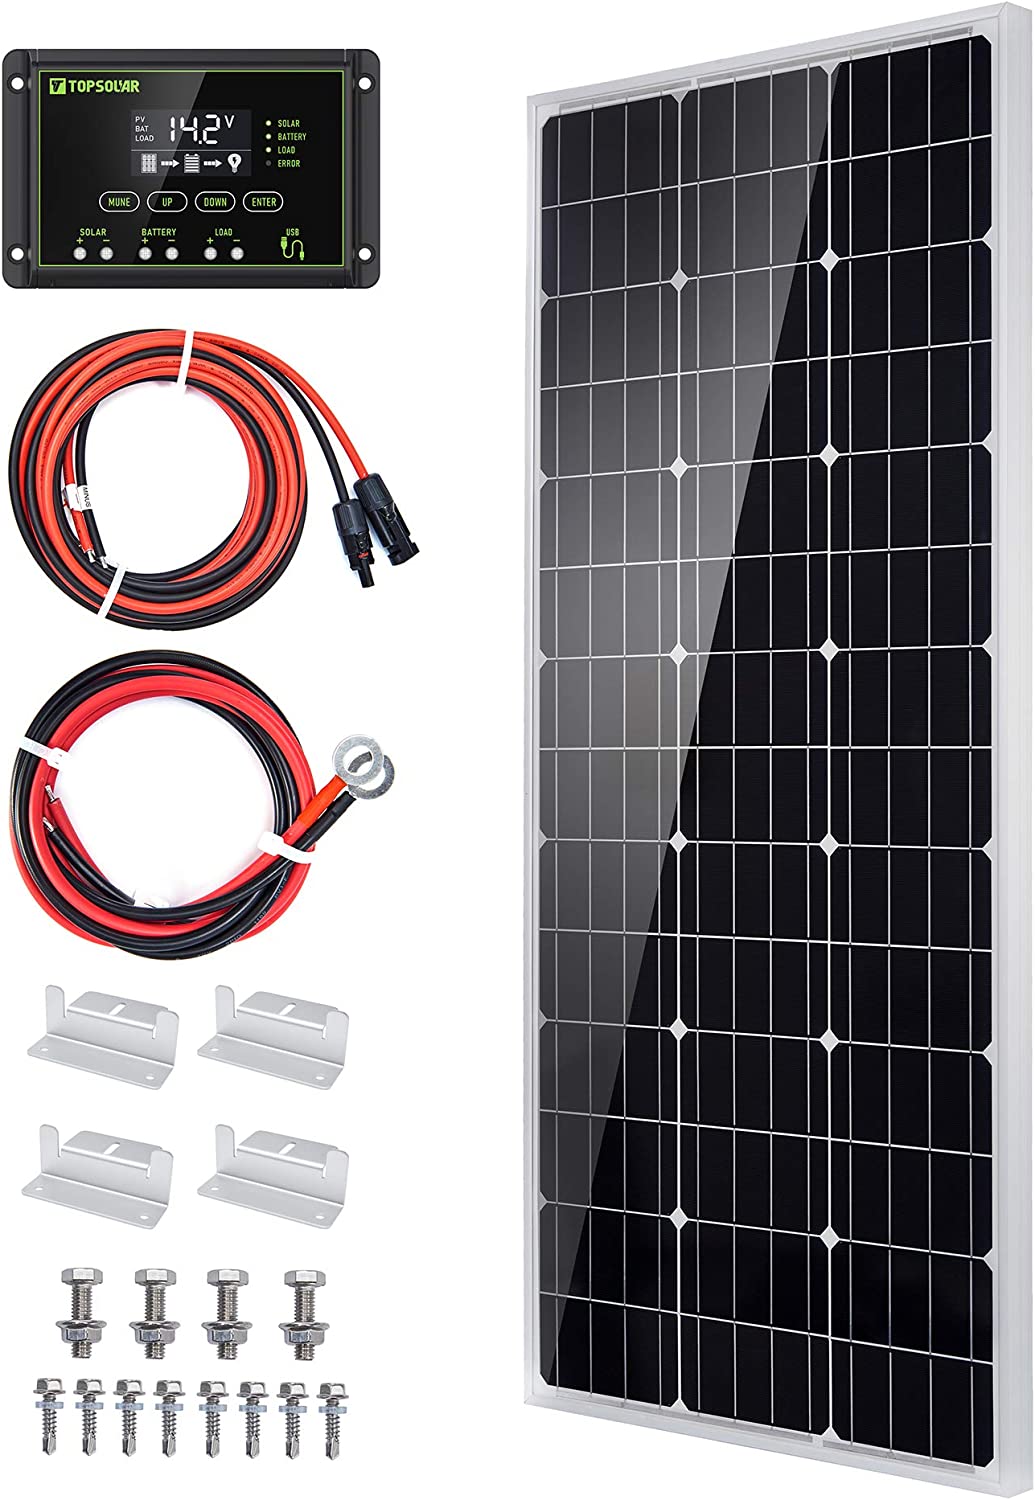 FOUF 100 Watt 12 Volt Solar Panel Starter Kit, Solar Panel Kit with 100A  12V/24V Solar Charge Controller, Monocrystalline PV Module for Home,  Camping,